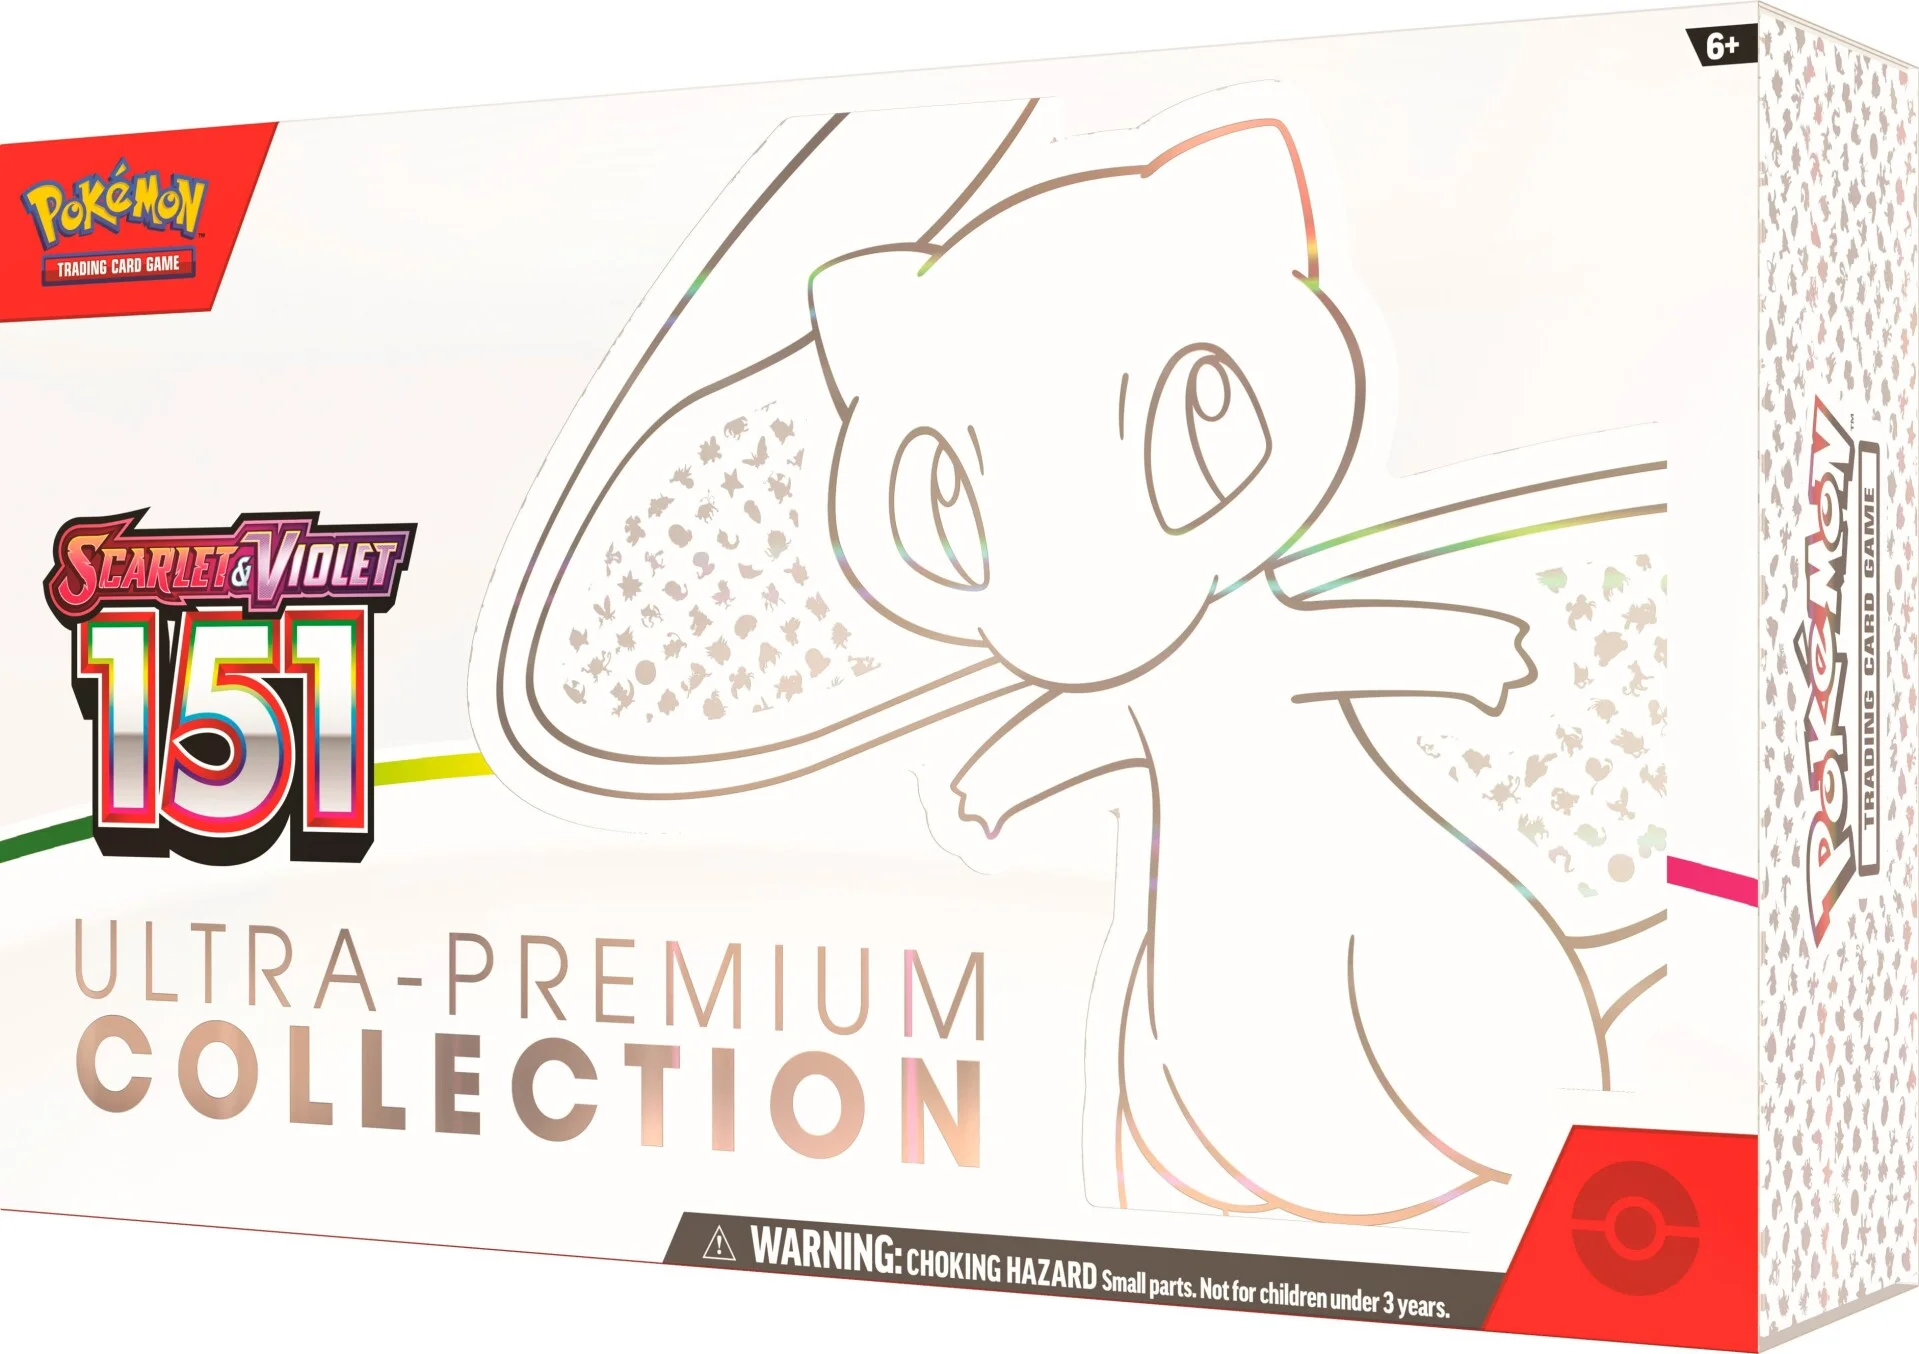 Pokémon TCG: Scarlet & Violet—151 Ultra-Premium Collection - DE